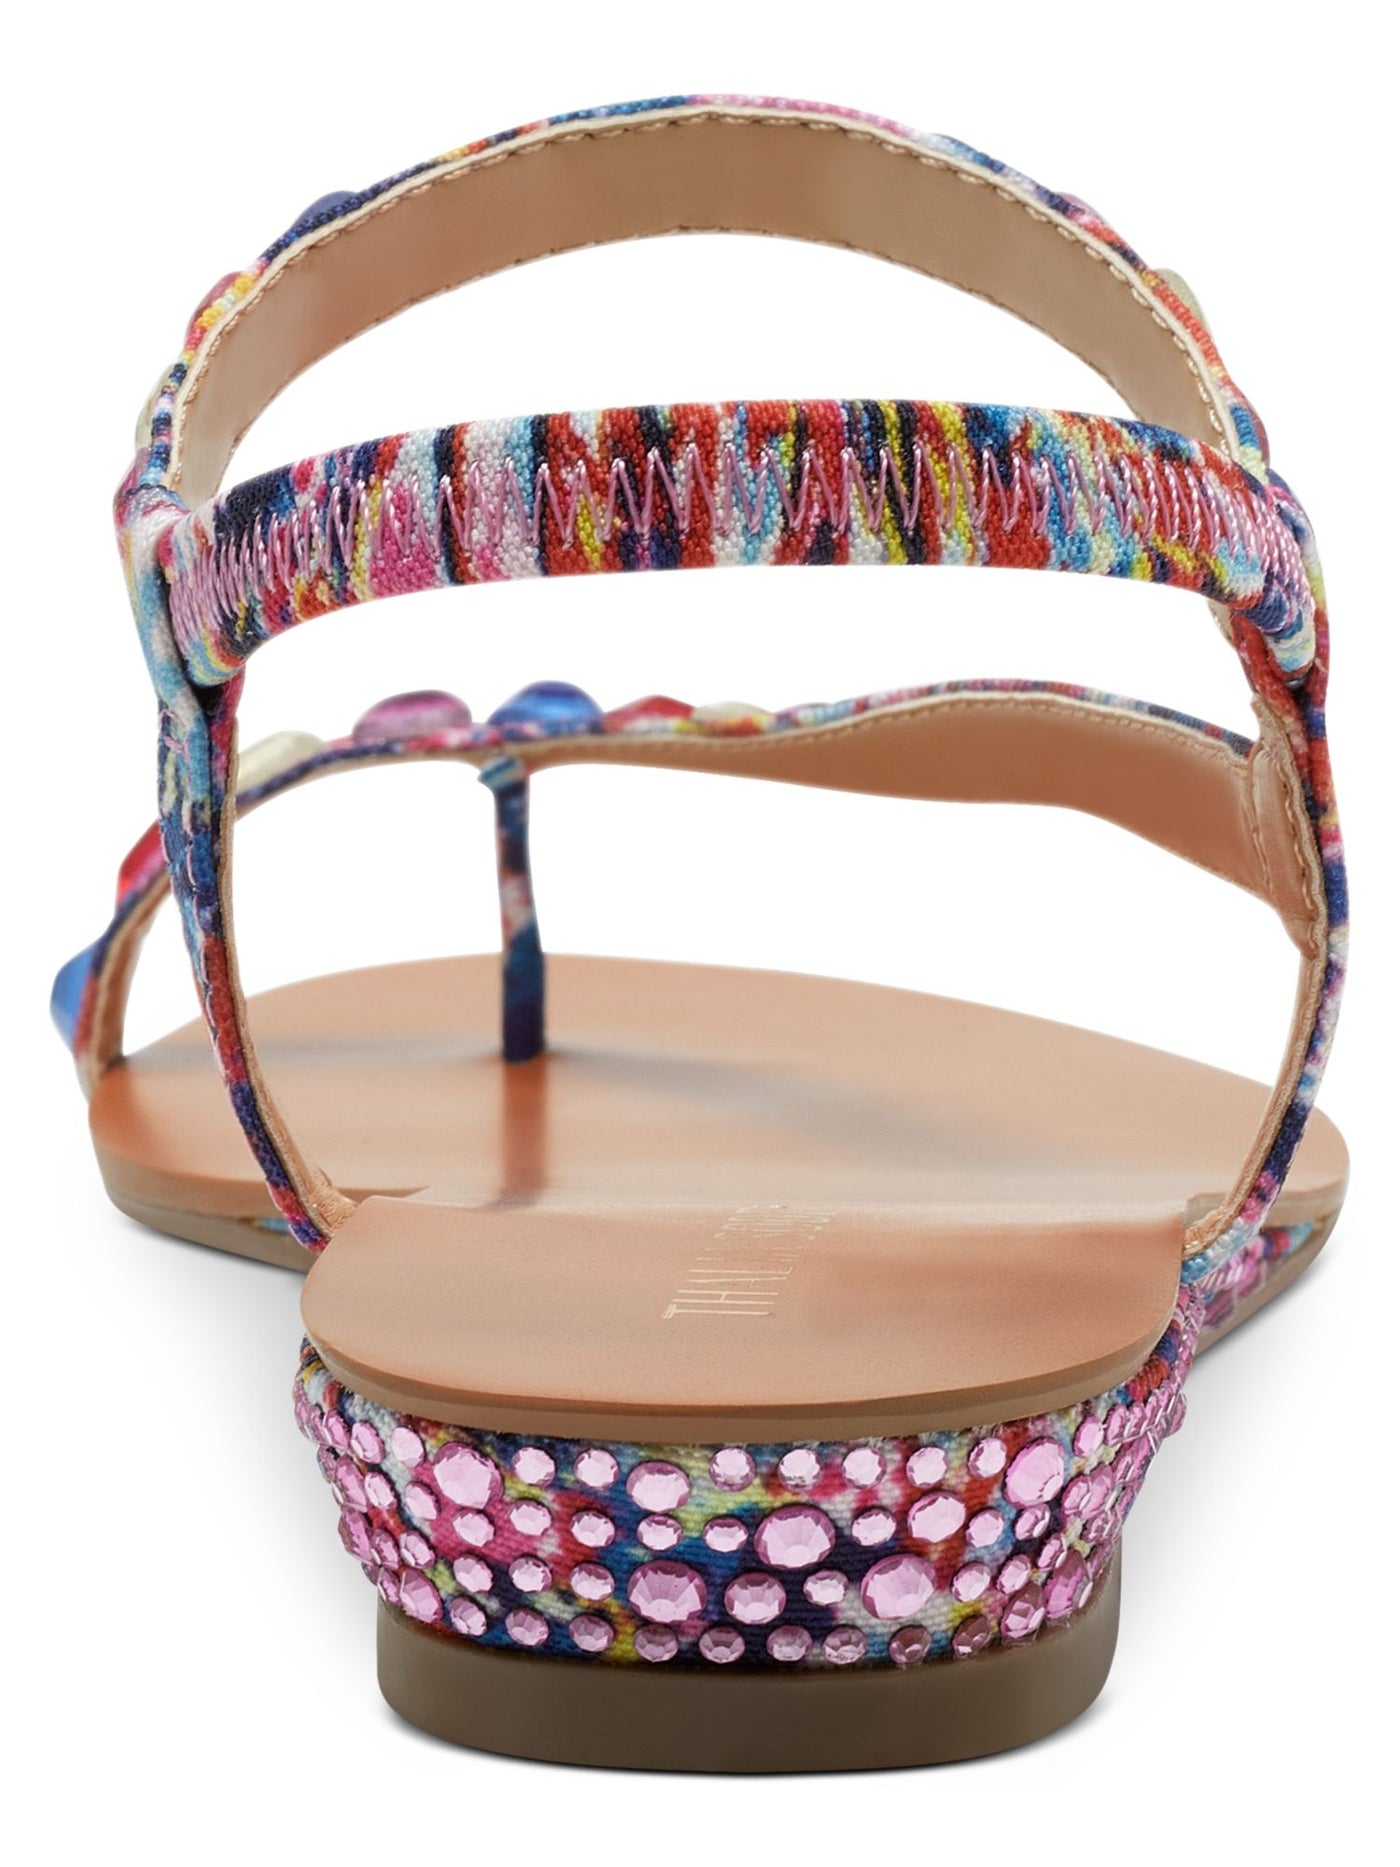 THALIA SODI Womens Pink Colorblock Embellished Izabel Round Toe Wedge Slip On Sandals Shoes 8.5 M